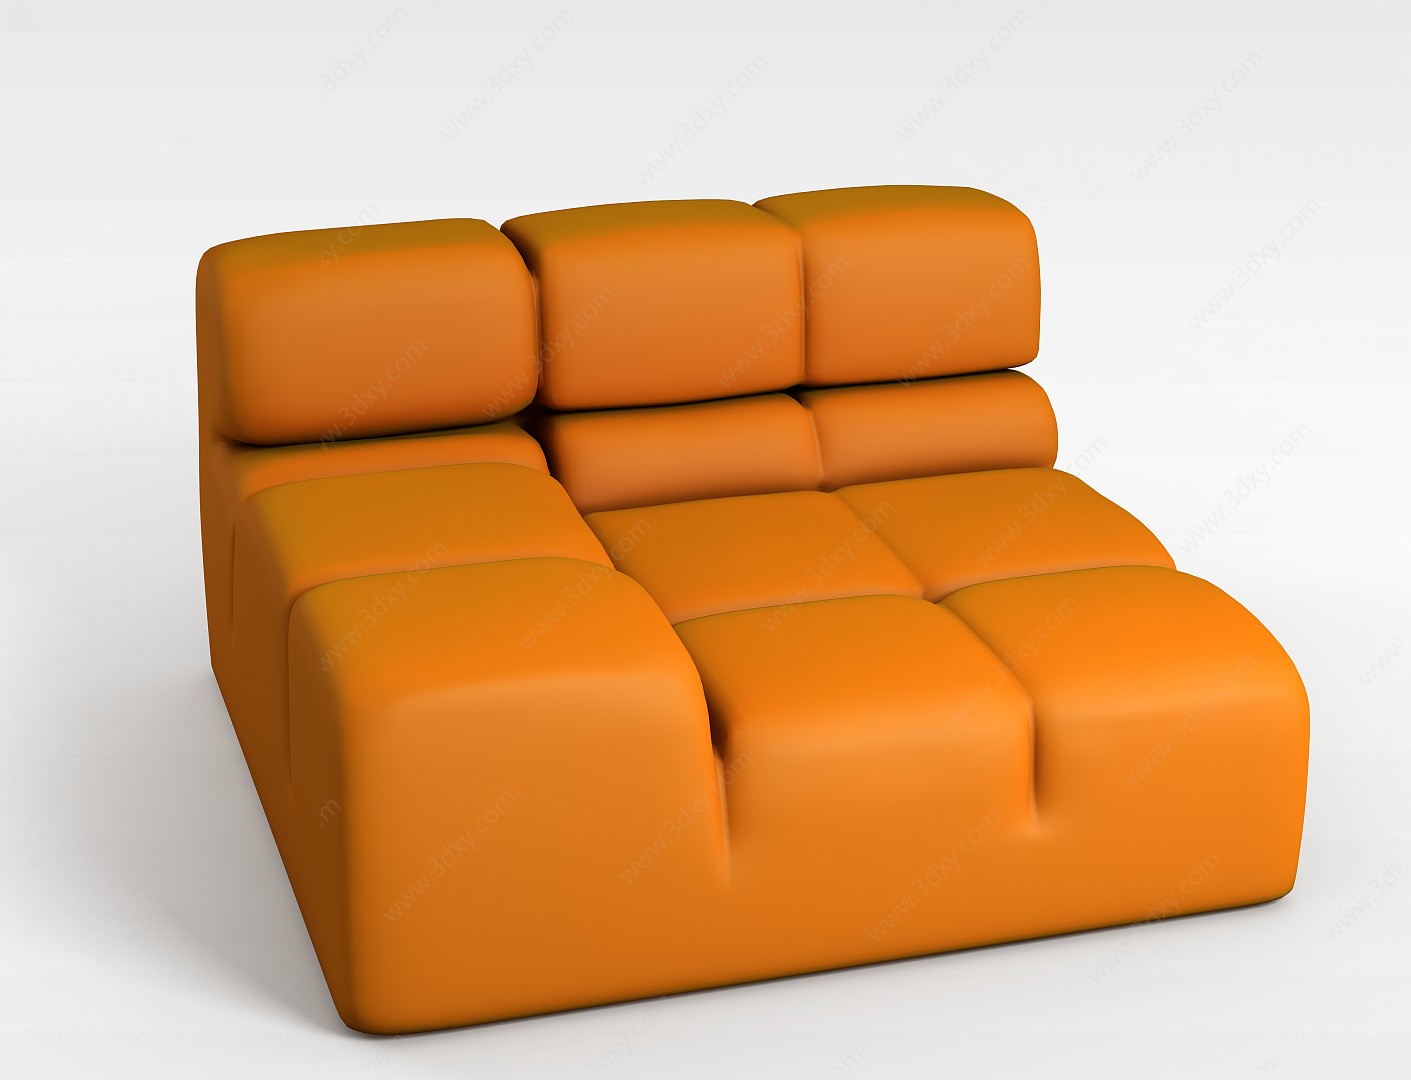 现代简约风格沙发椅3D模型